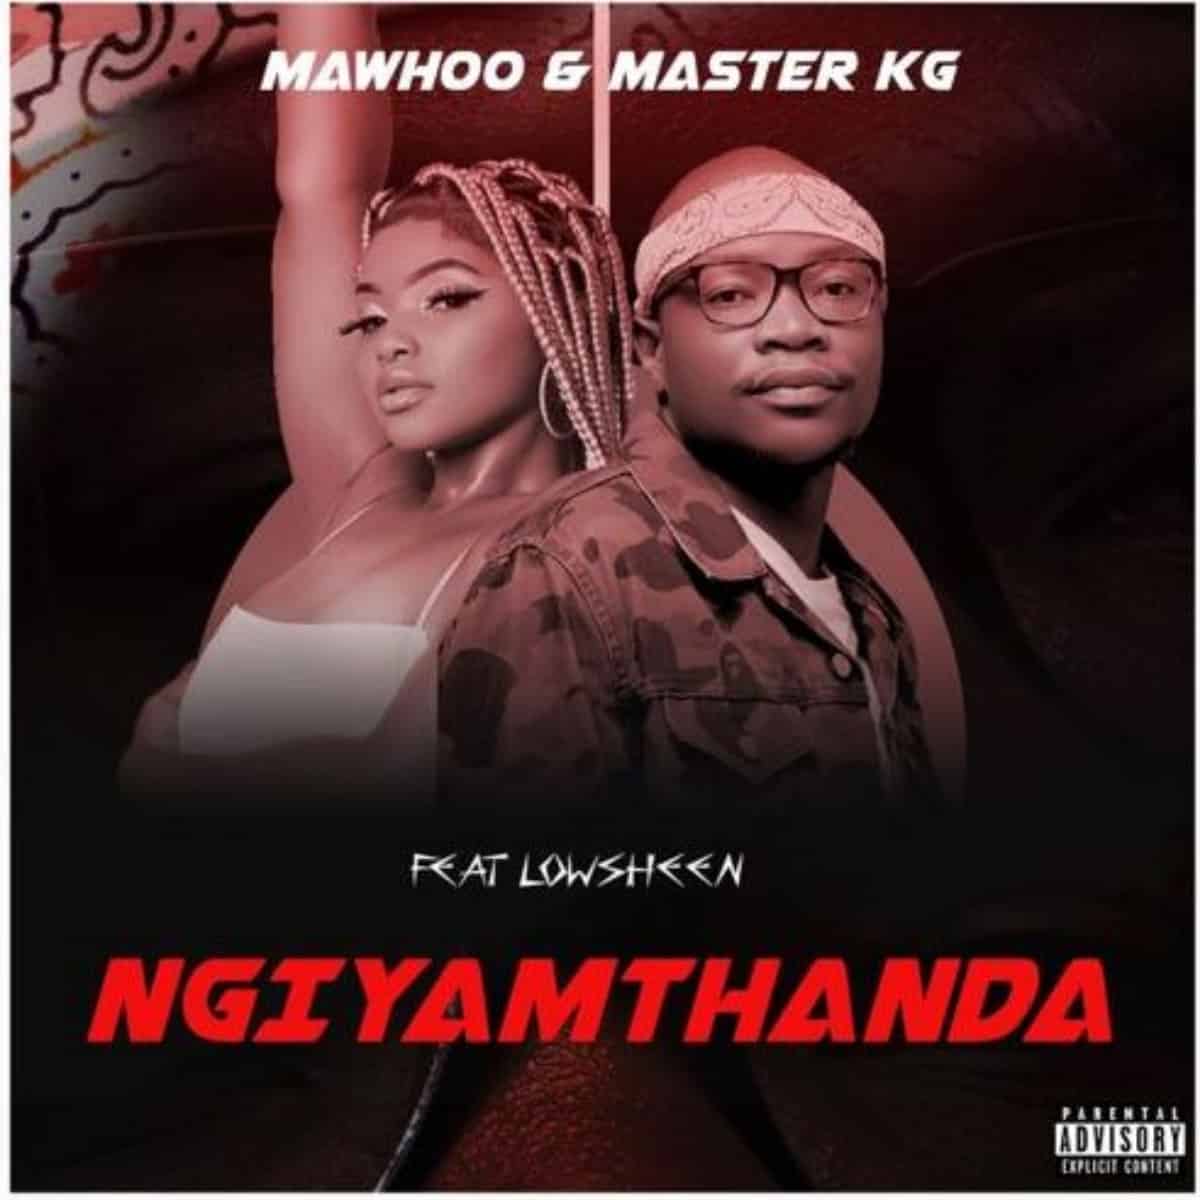 DOWNLOAD: MaWhoo & Master KG Ft Lowsheen – “Ngiyamthanda” Video + Audio Mp3